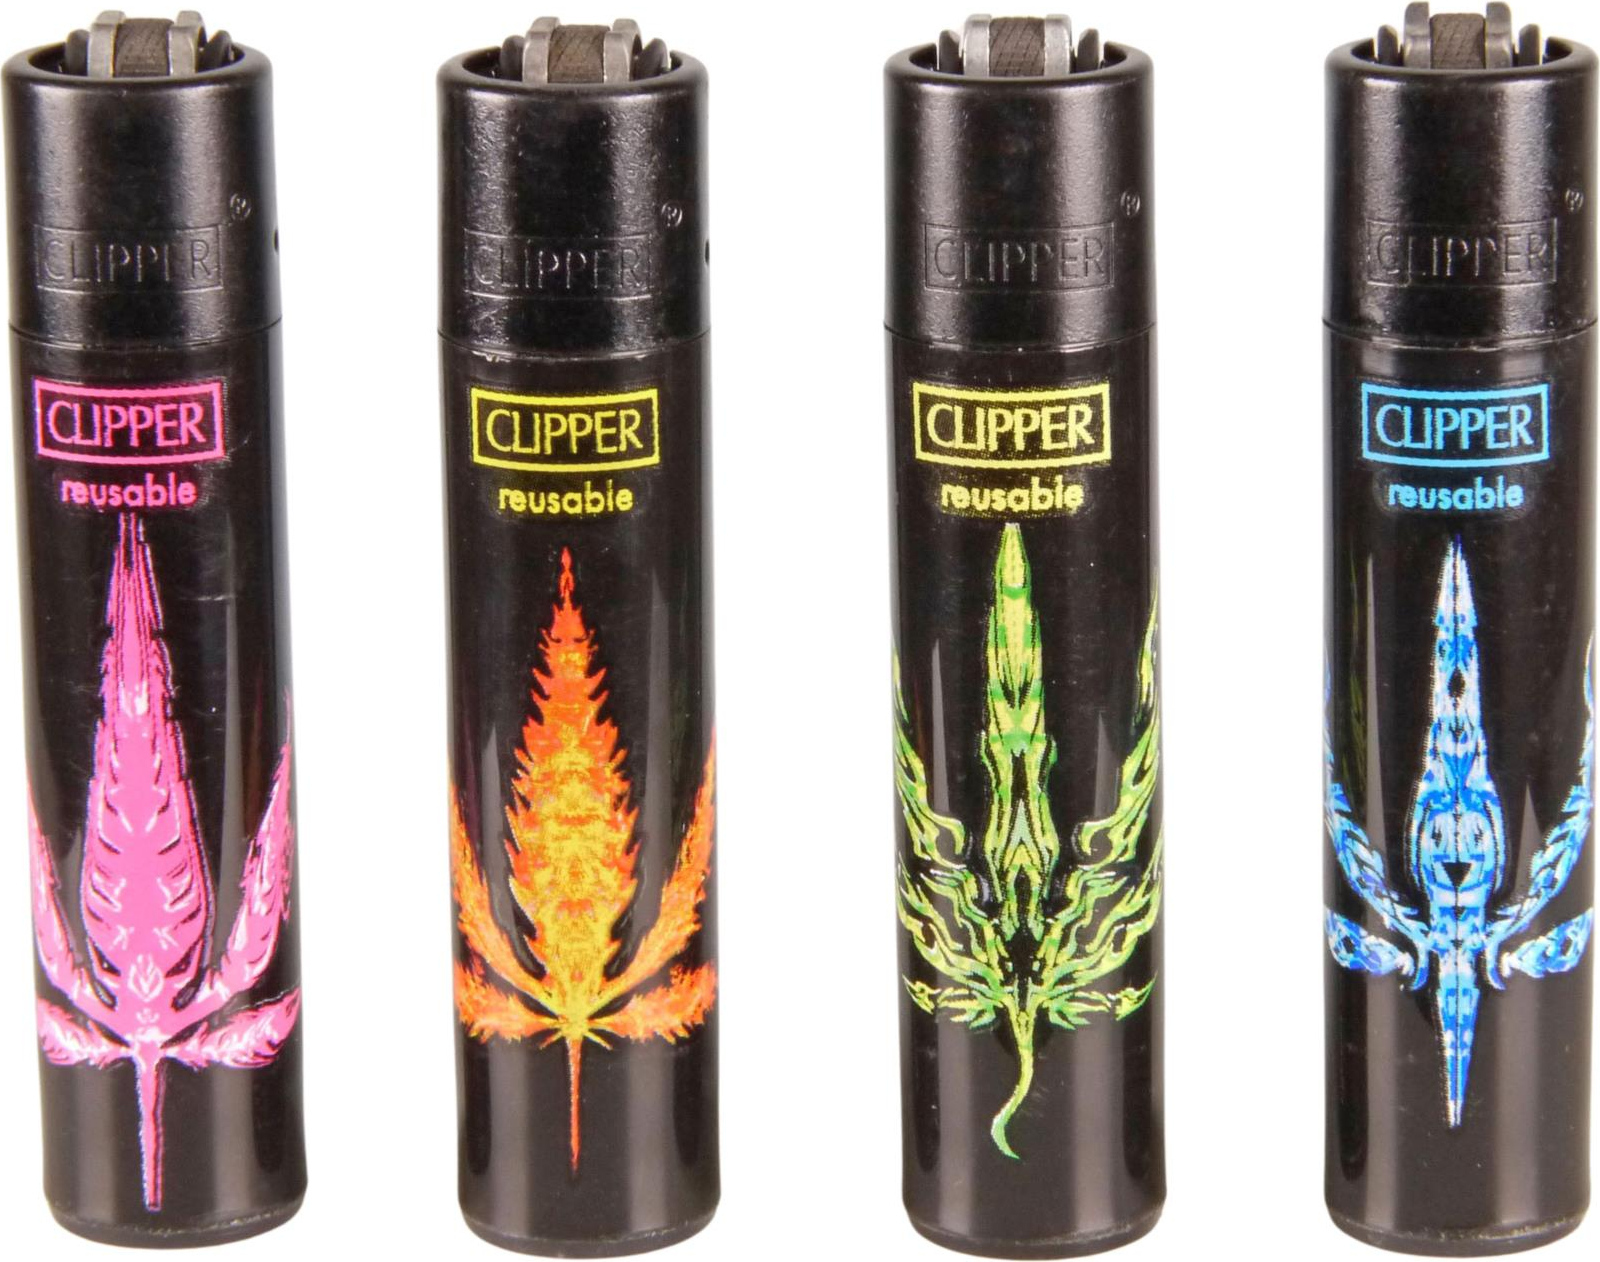 Clipper Feuerzeug - Fire Leaf